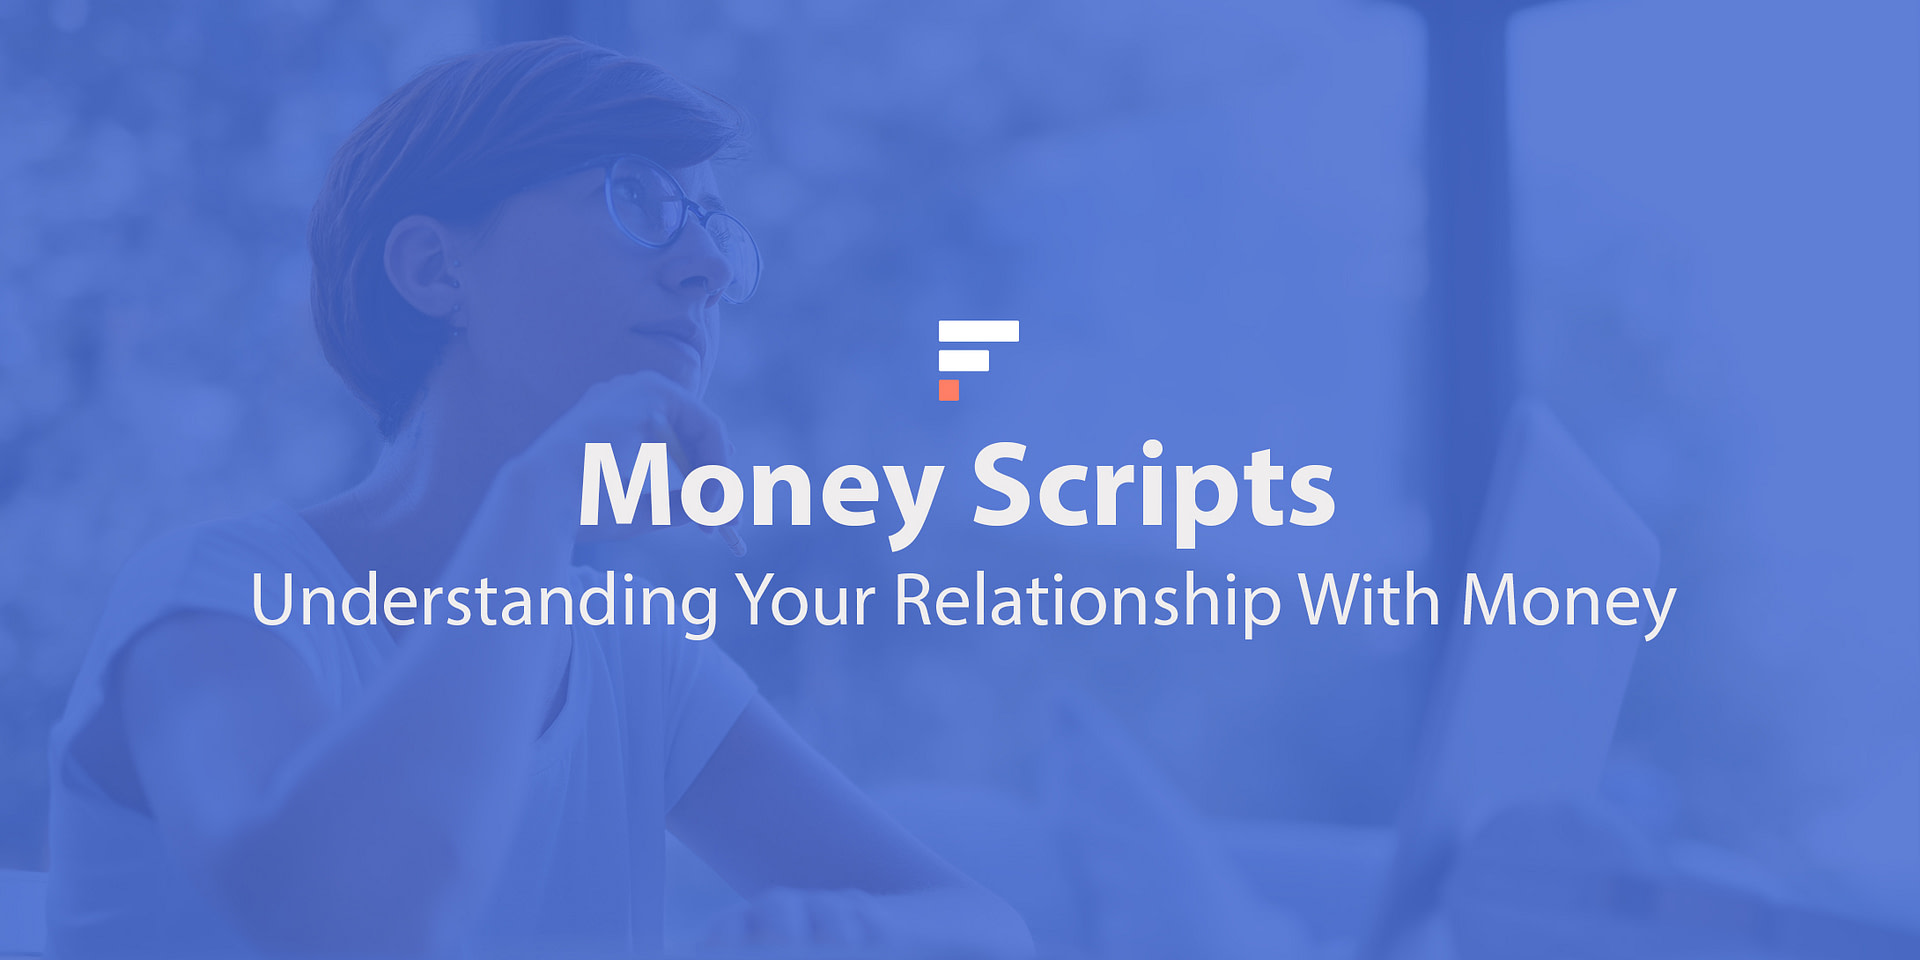 Money Scripts: Understanding Your Relationship With Money